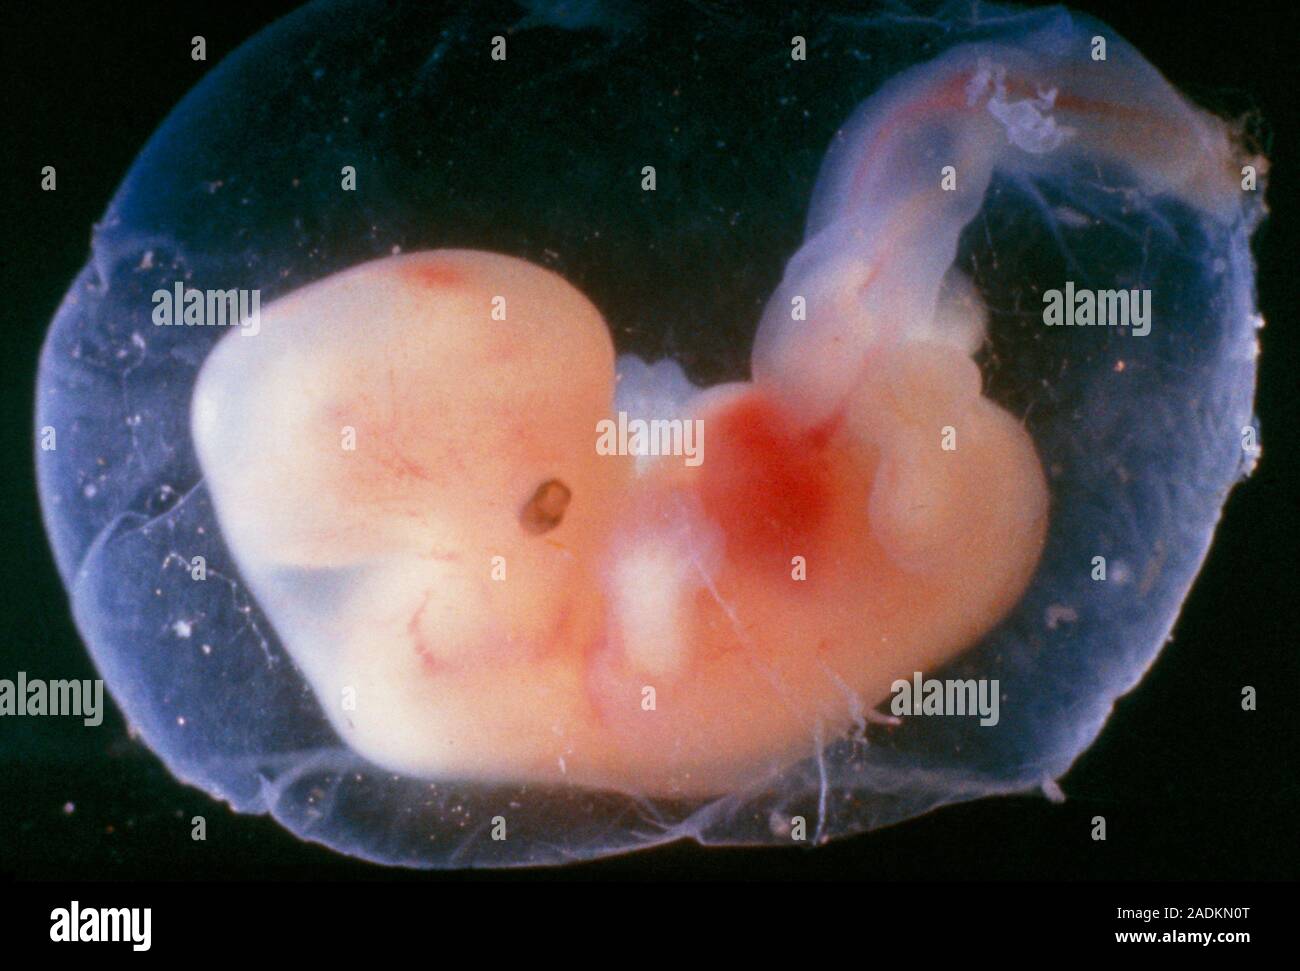 8 недель и 4 дня. Зародыг человека на 5 недели беременности. Эмбрион человека 5 недель.